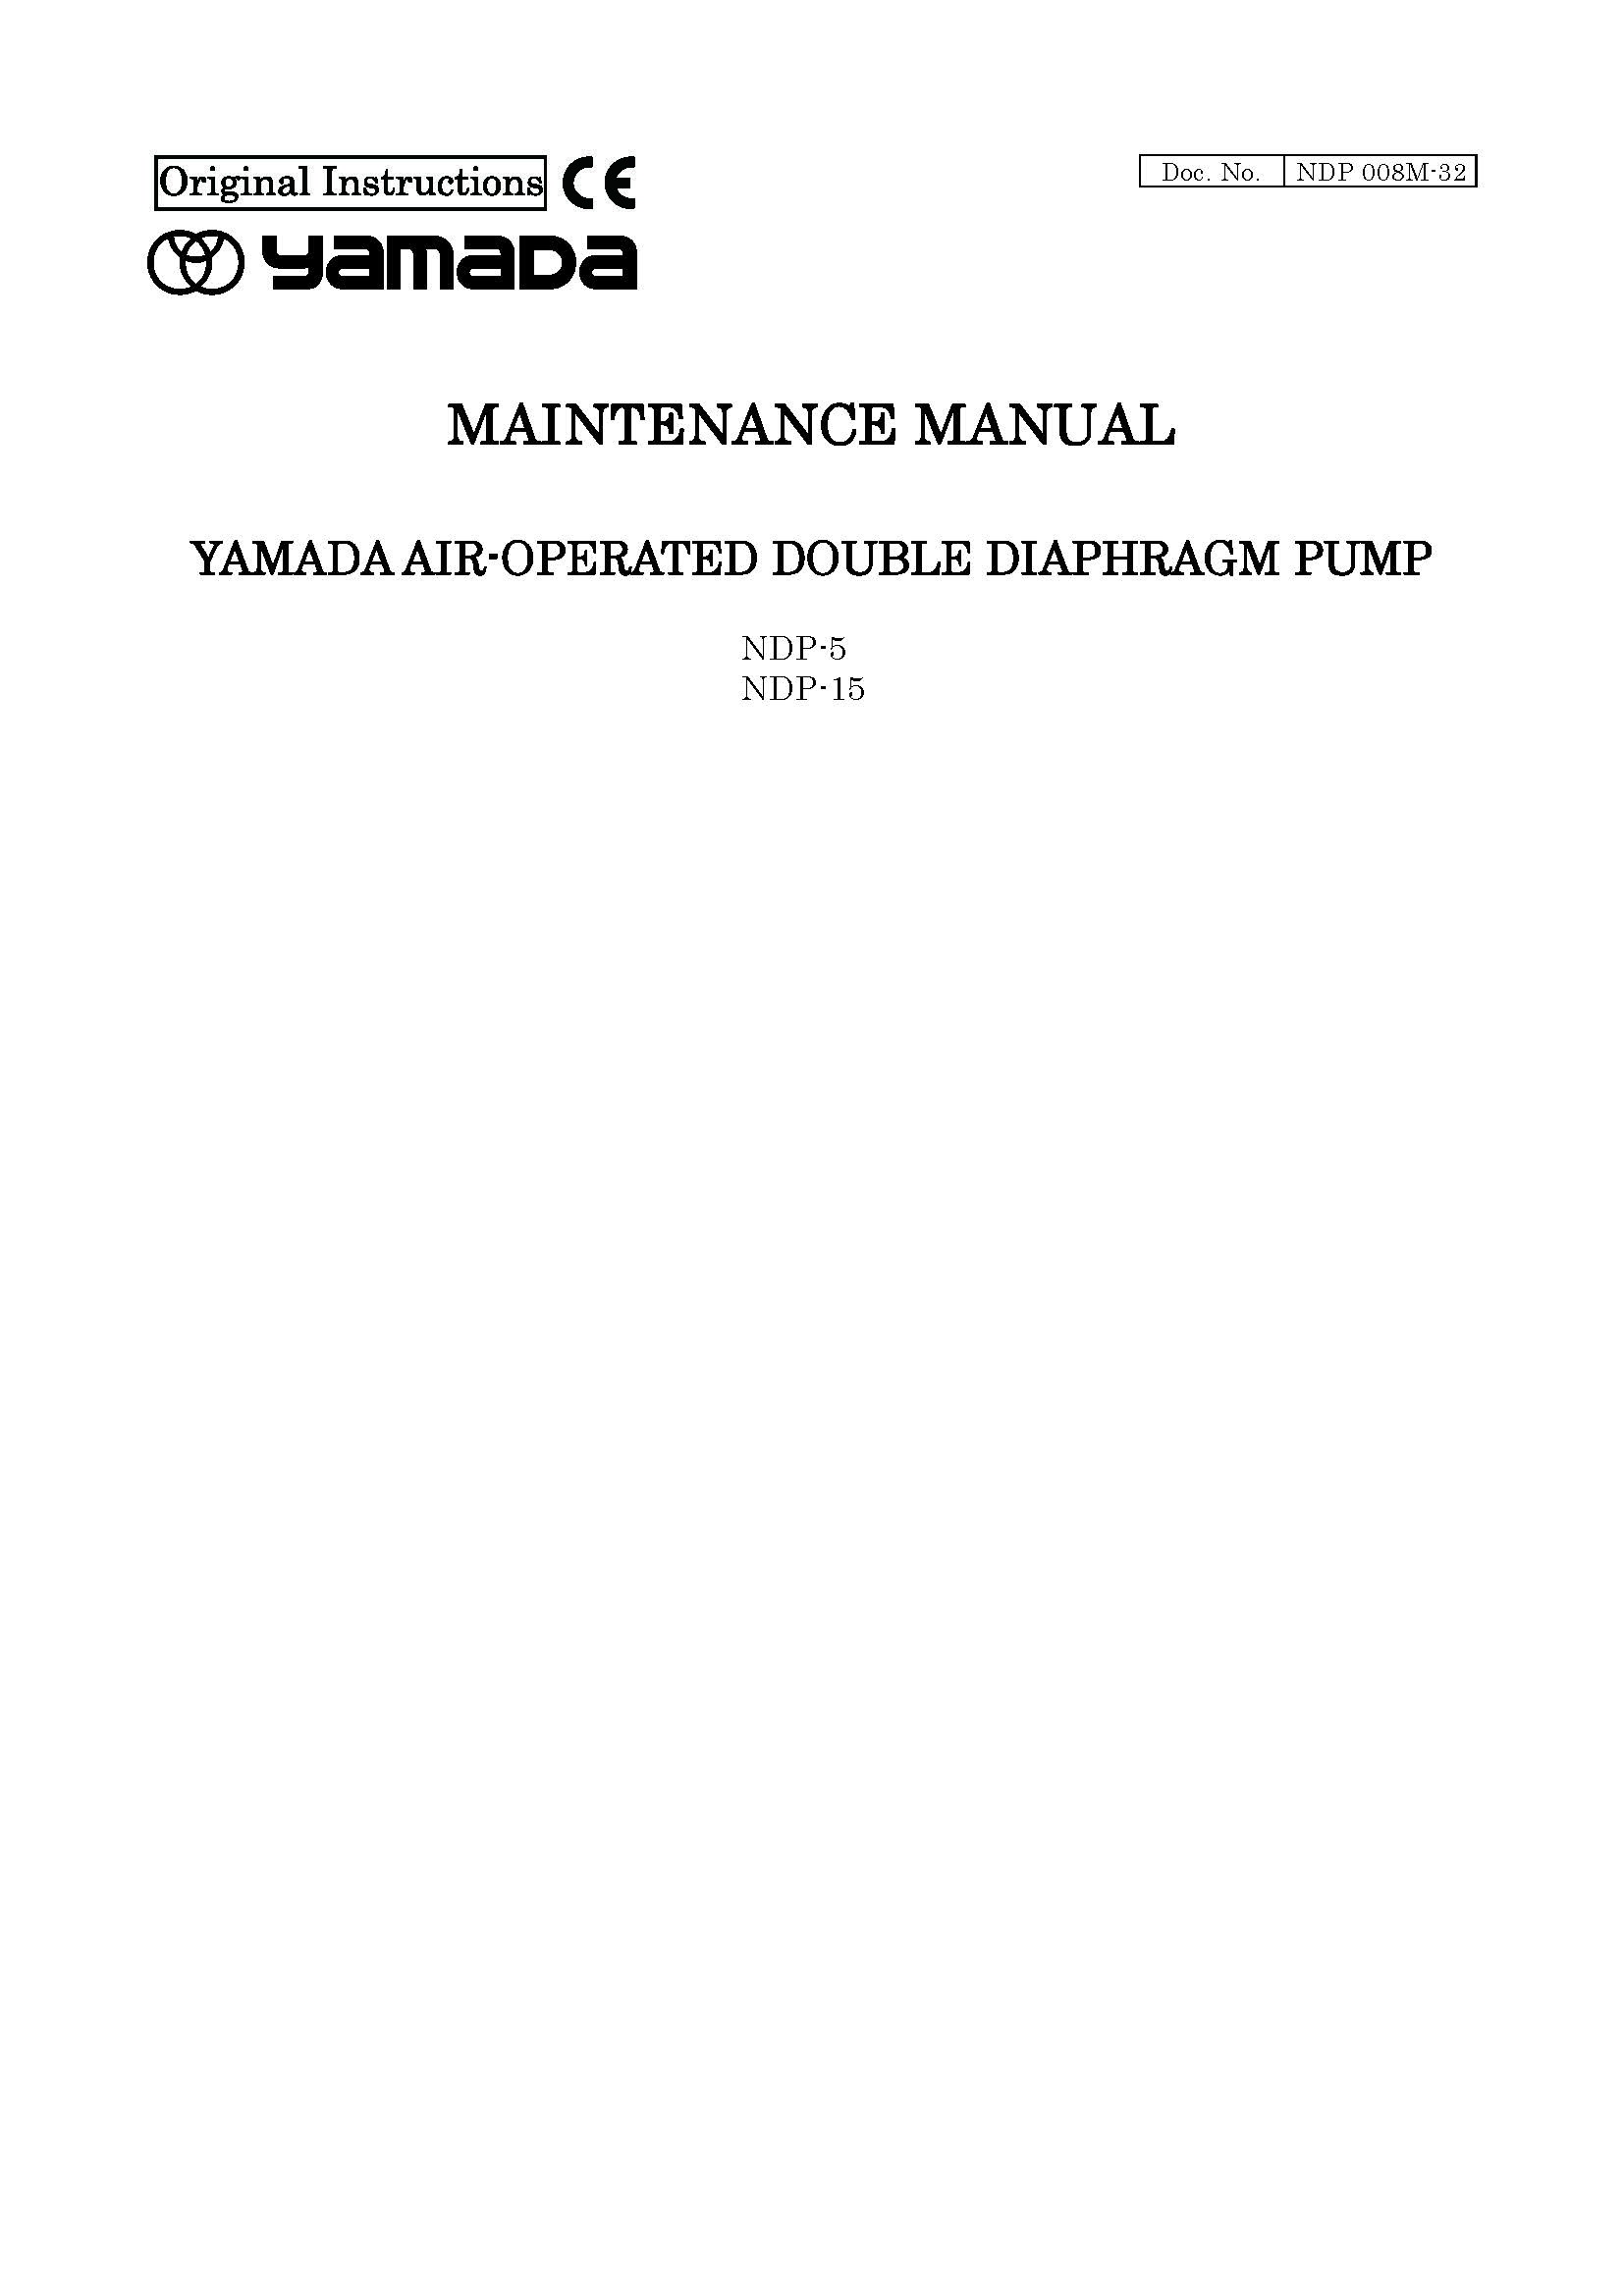 Maintenance Manual NDP-5 NDP-15